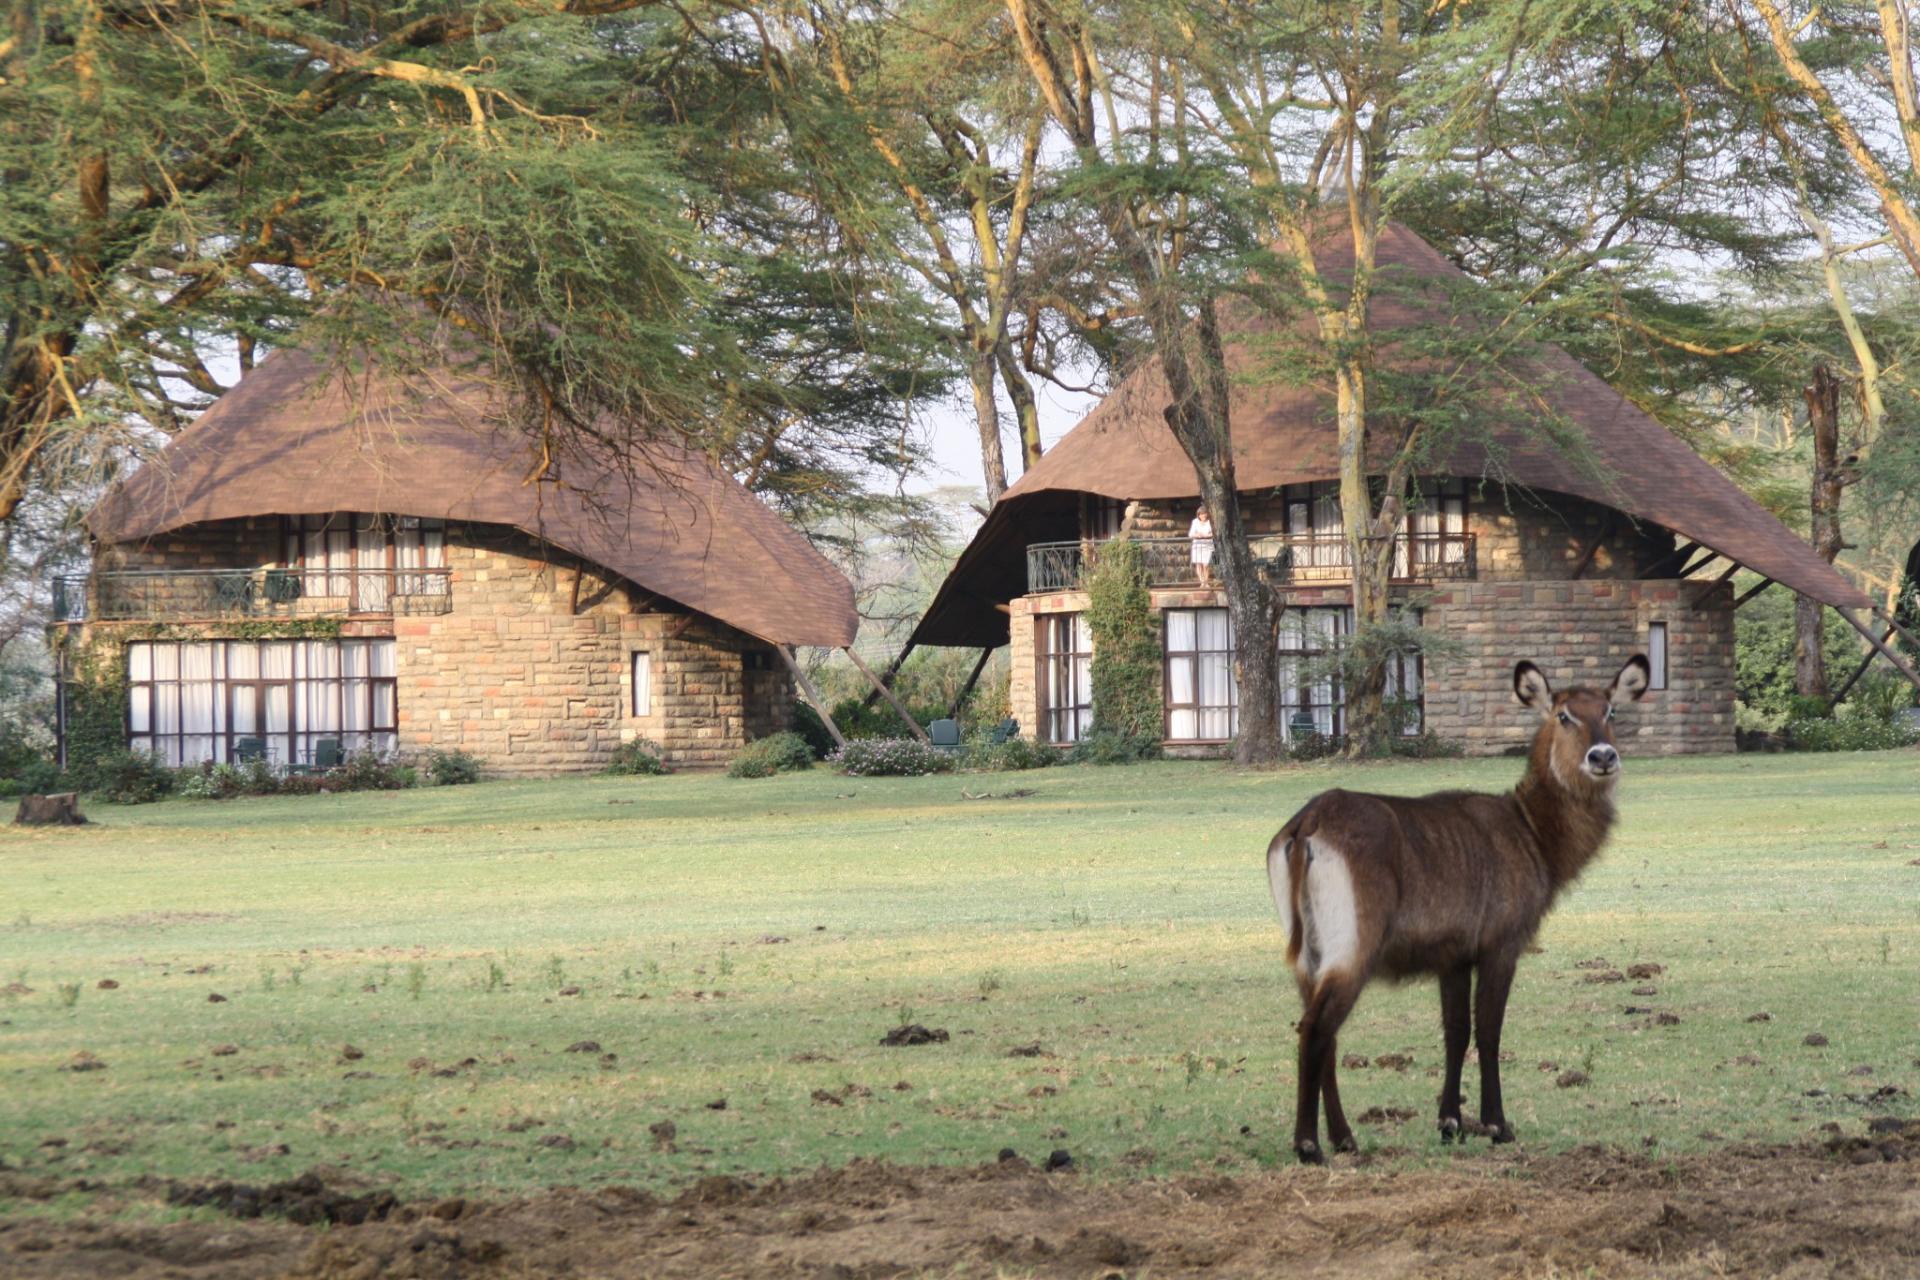 YHA Kenya Travel, Guided Tours Safaris, African Safari, African Safaris, Kenya Safari, Kenya Safaris, Tanzania Safari, Uganda Safari, Big Five, Safari Bookings, Budget safaris, luxury lodge safaris, Adventure Safari, Act (13)